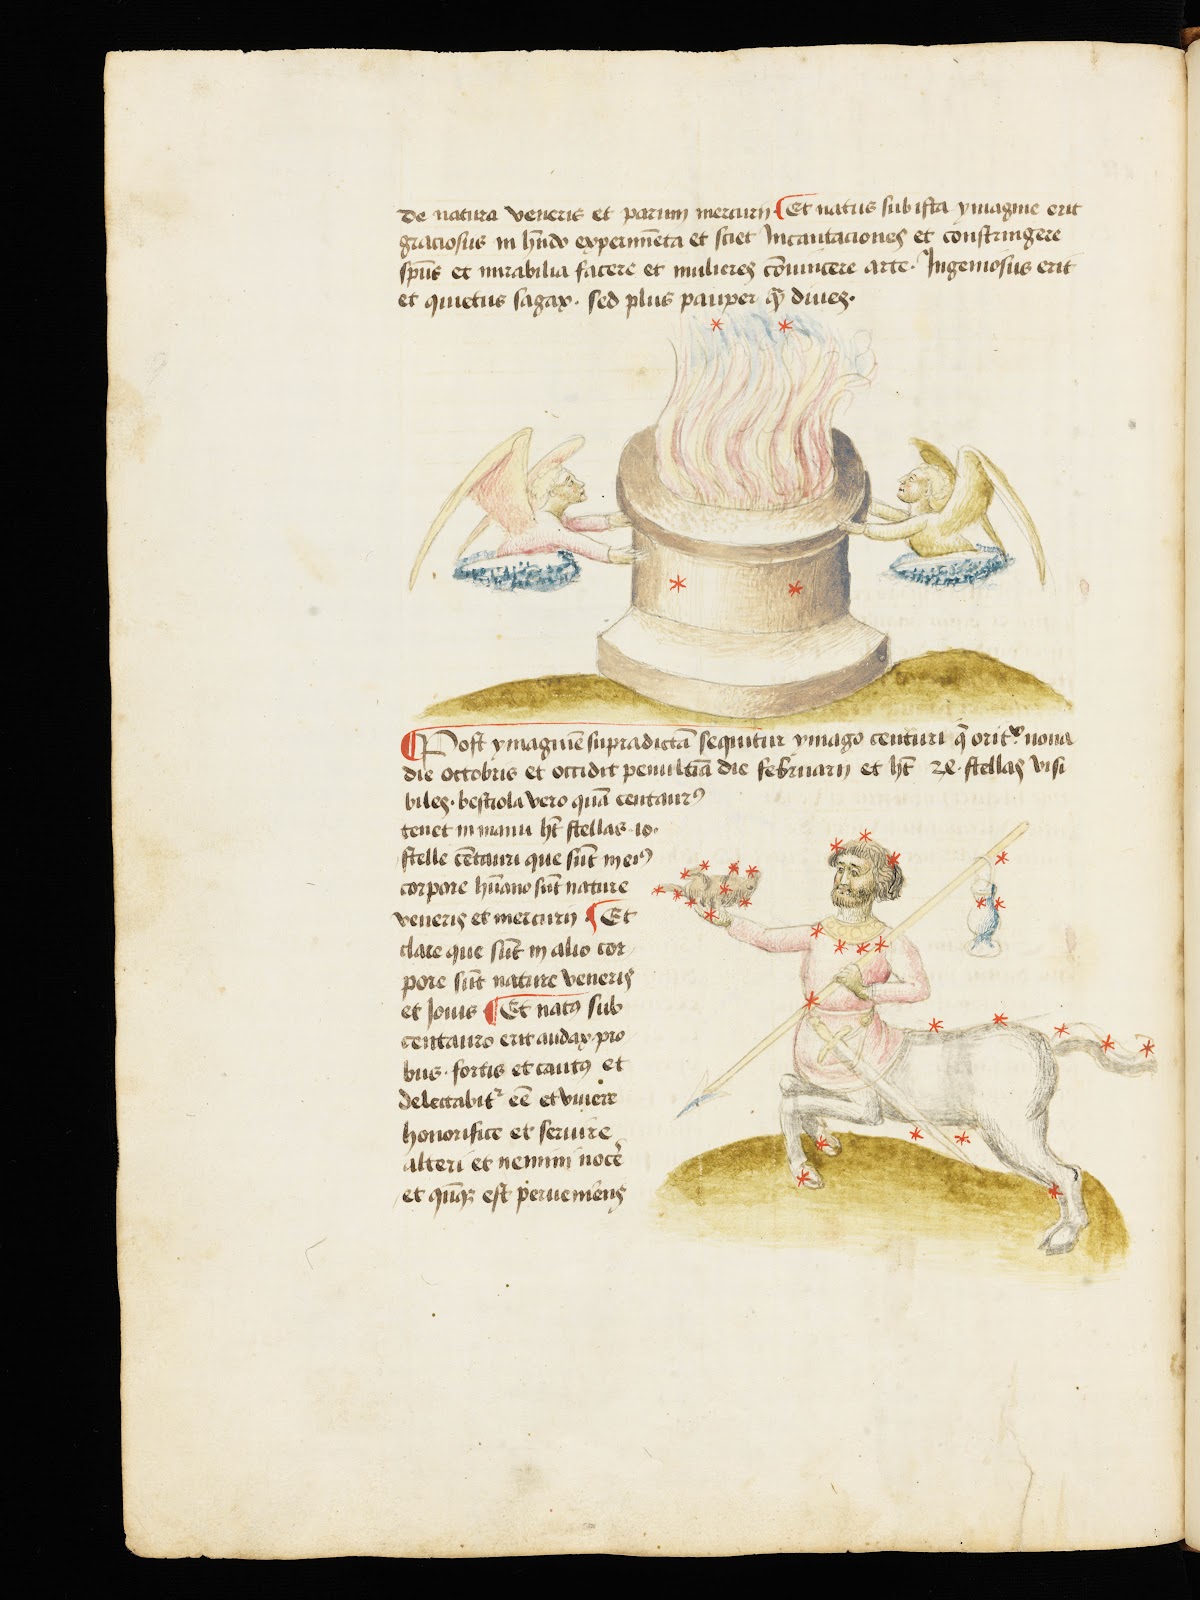 facsimilium: De Figura seu imagine mundi, 15th Century